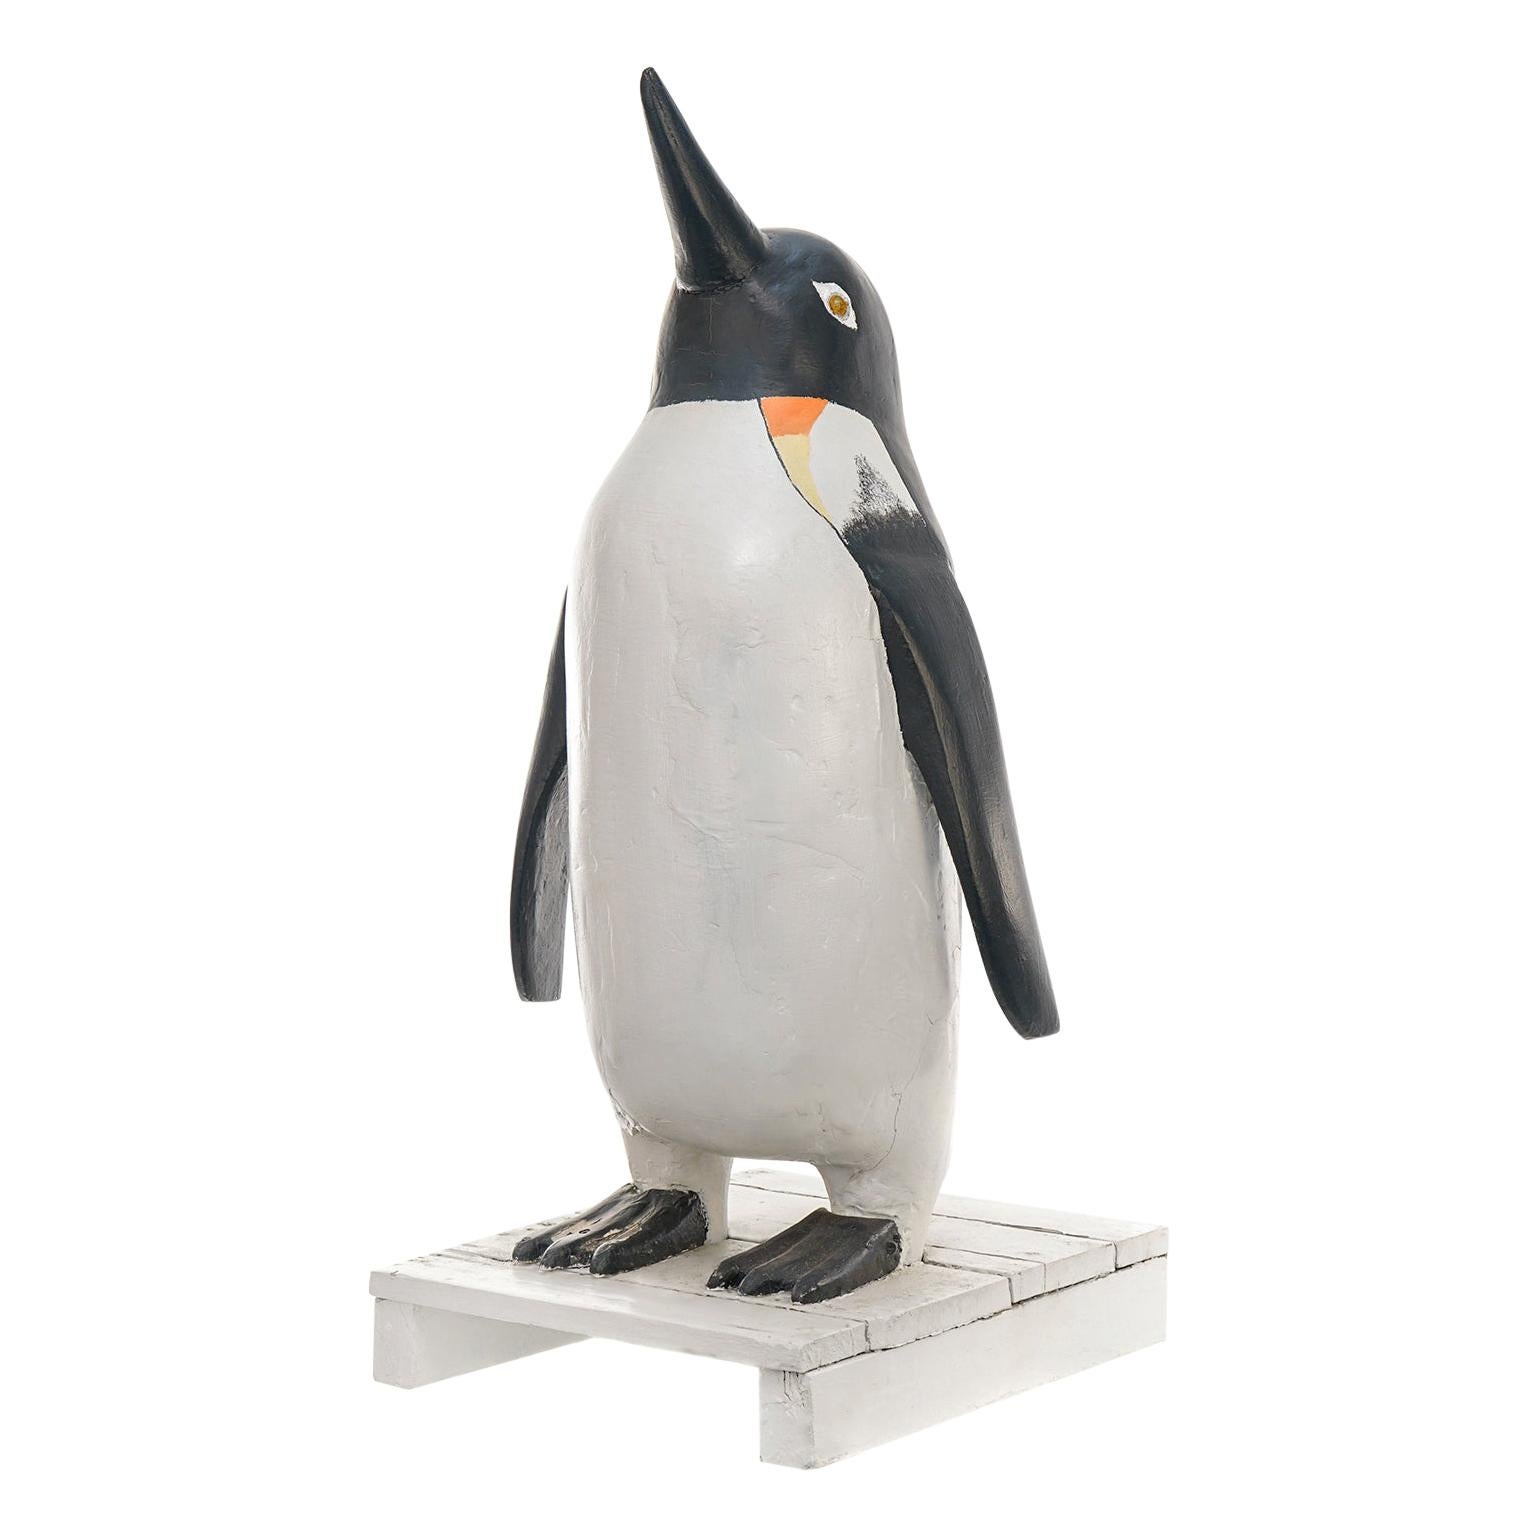 Carved Penguin - 13 For Sale on 1stDibs | penguin wood carving, wood carved  penguin, penguin carving